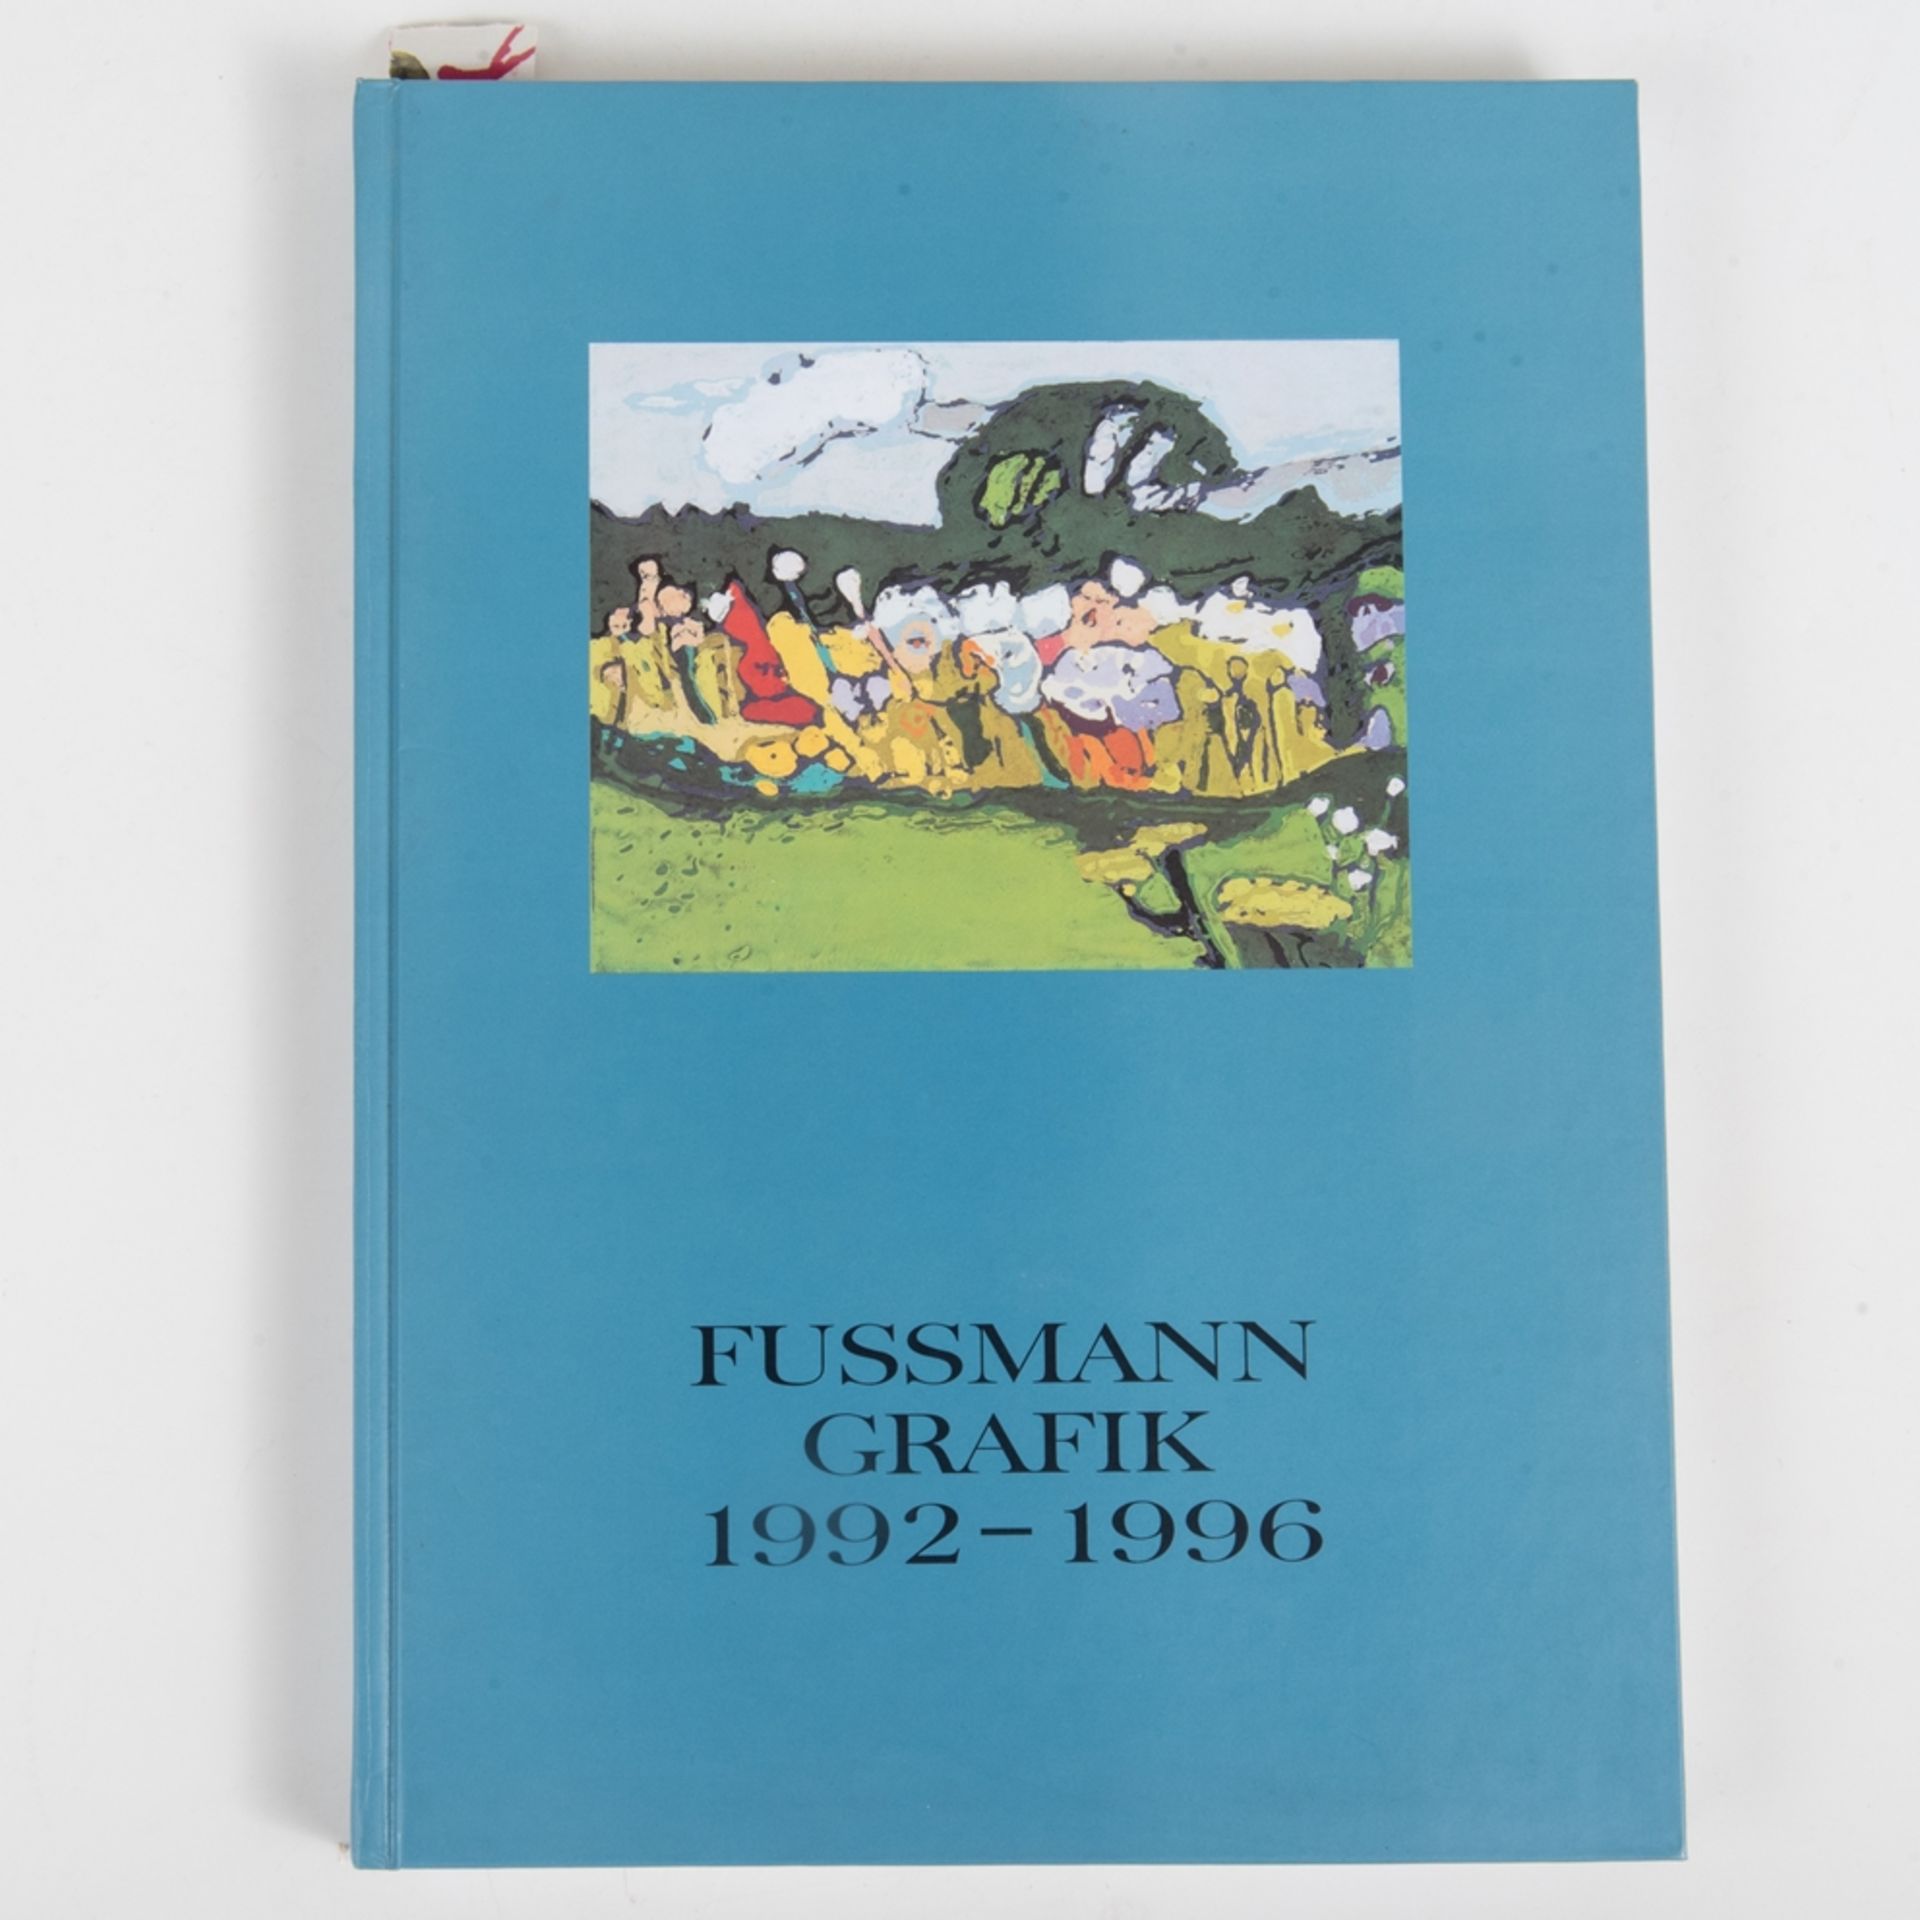 Fussmann, Klaus1938 Velbert - tätig ebenda. Werkverzeichnis der Druckgrafik der Jahre 1992 - 1996,